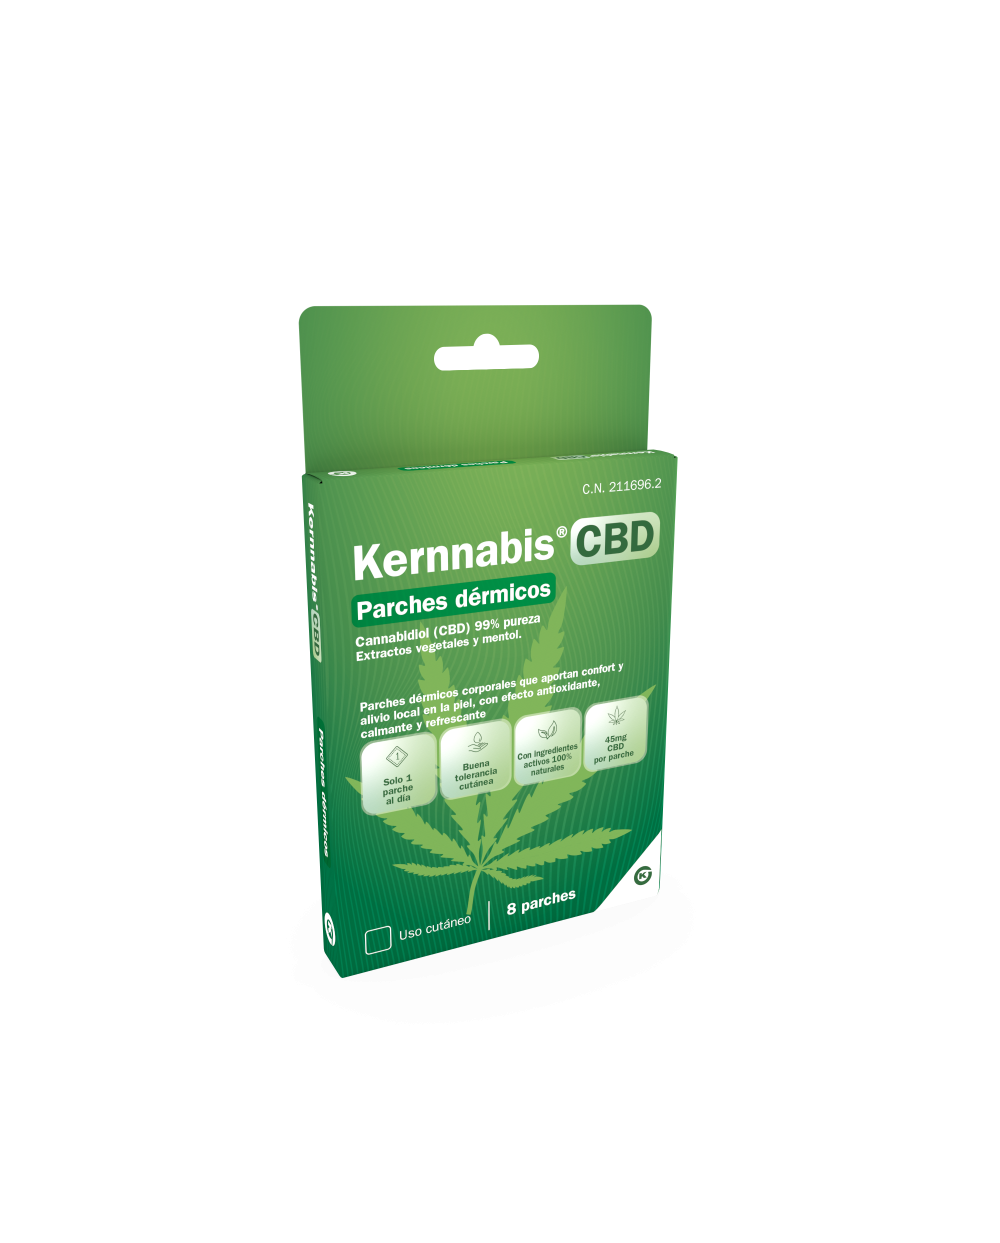 Kernnabis® CBD en parches dérmicos 8 uds.